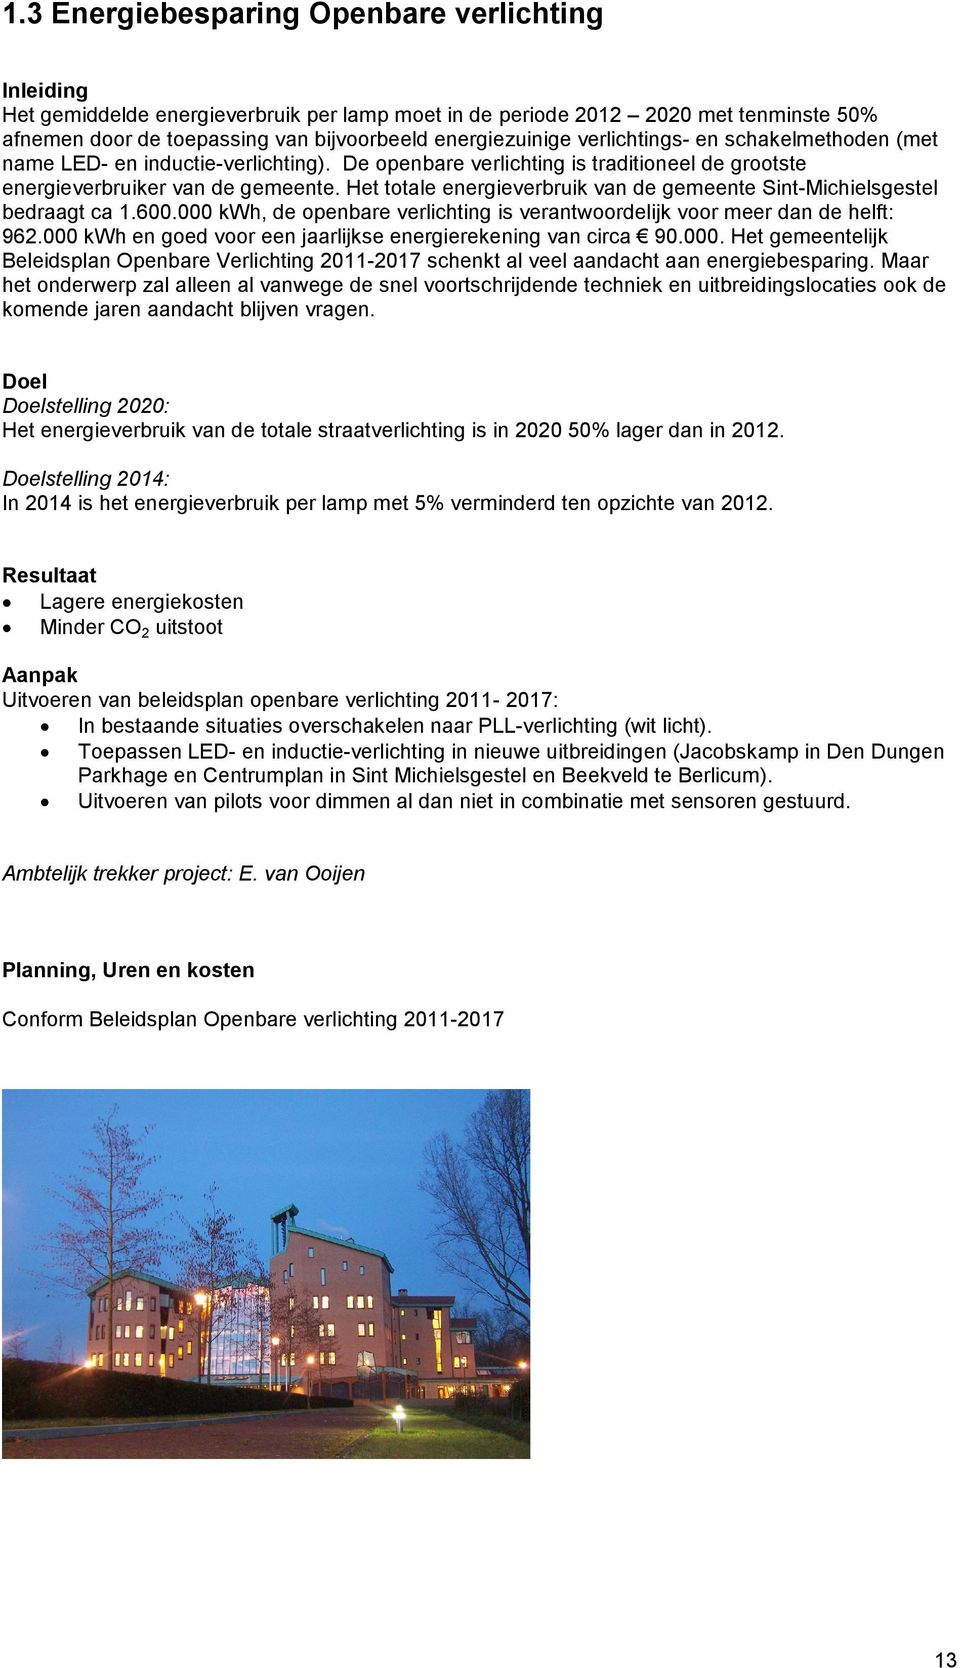 Het totale energieverbruik van de gemeente Sint-Michielsgestel bedraagt ca 1.600.000 kwh, de openbare verlichting is verantwoordelijk voor meer dan de helft: 962.